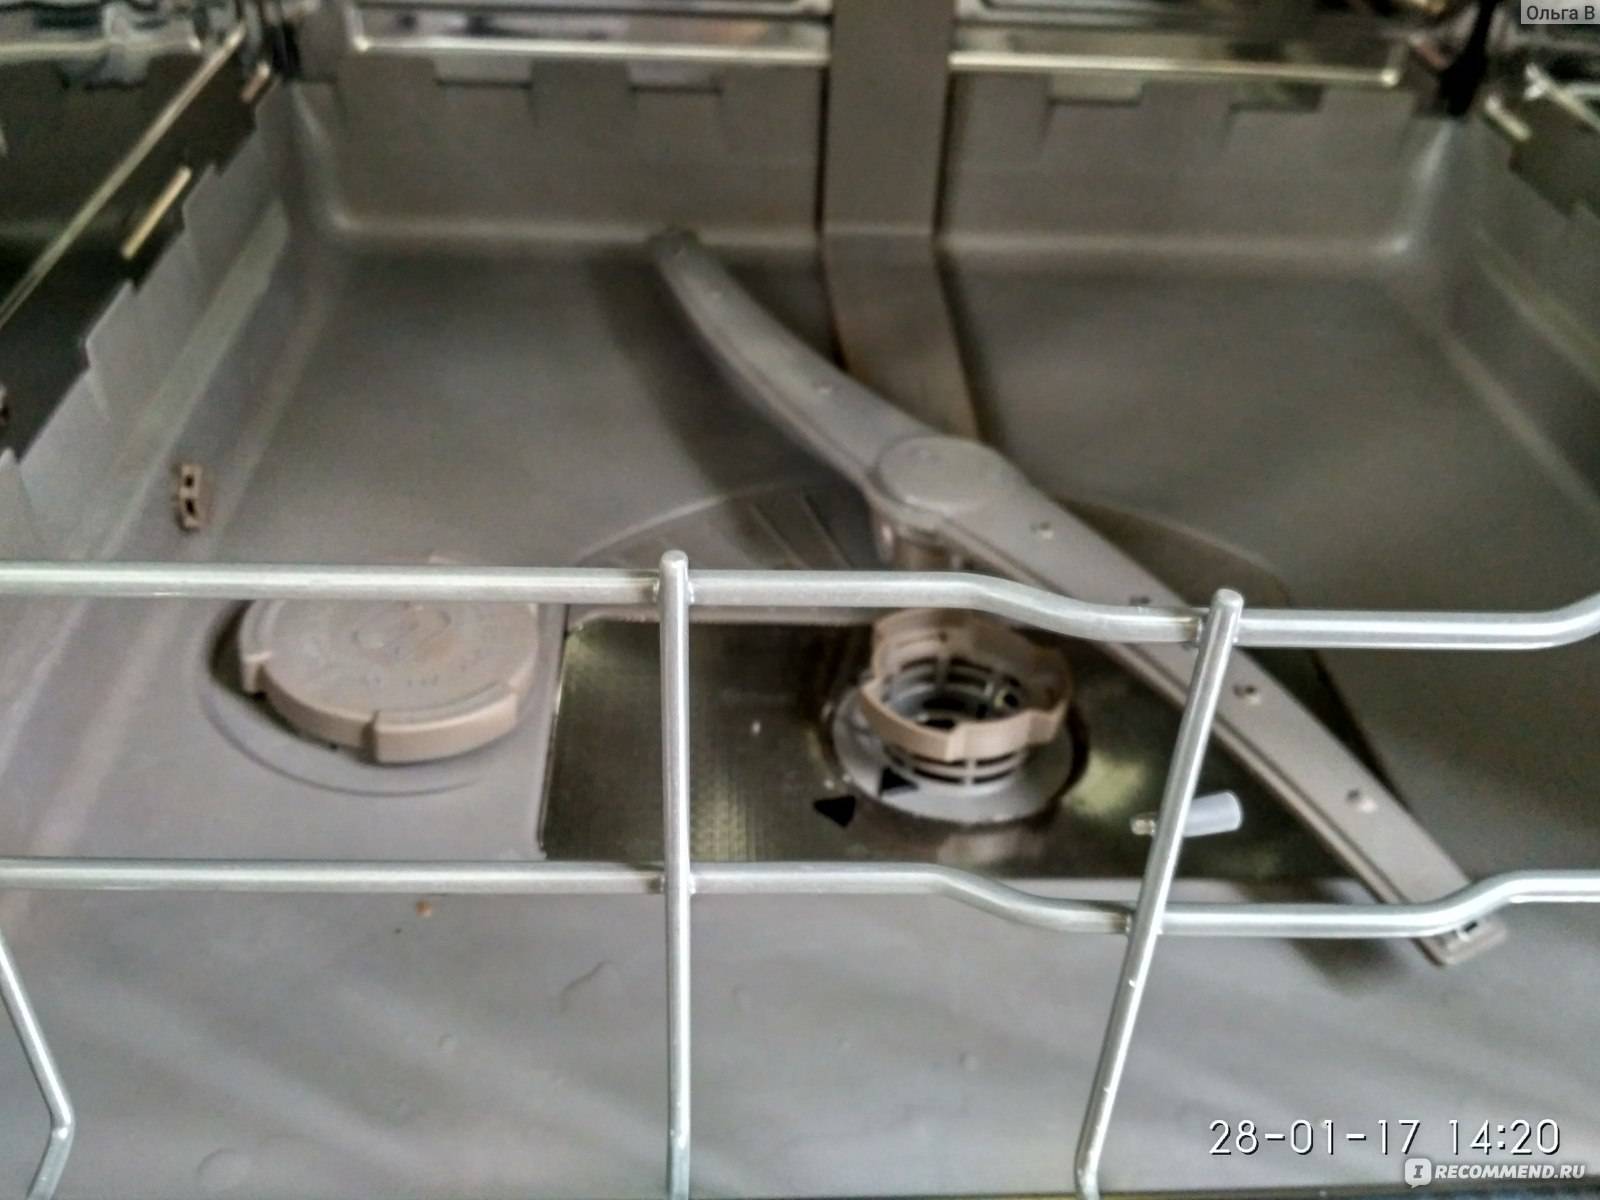 Посудомоечная машина bosch не набирает воду, что делать